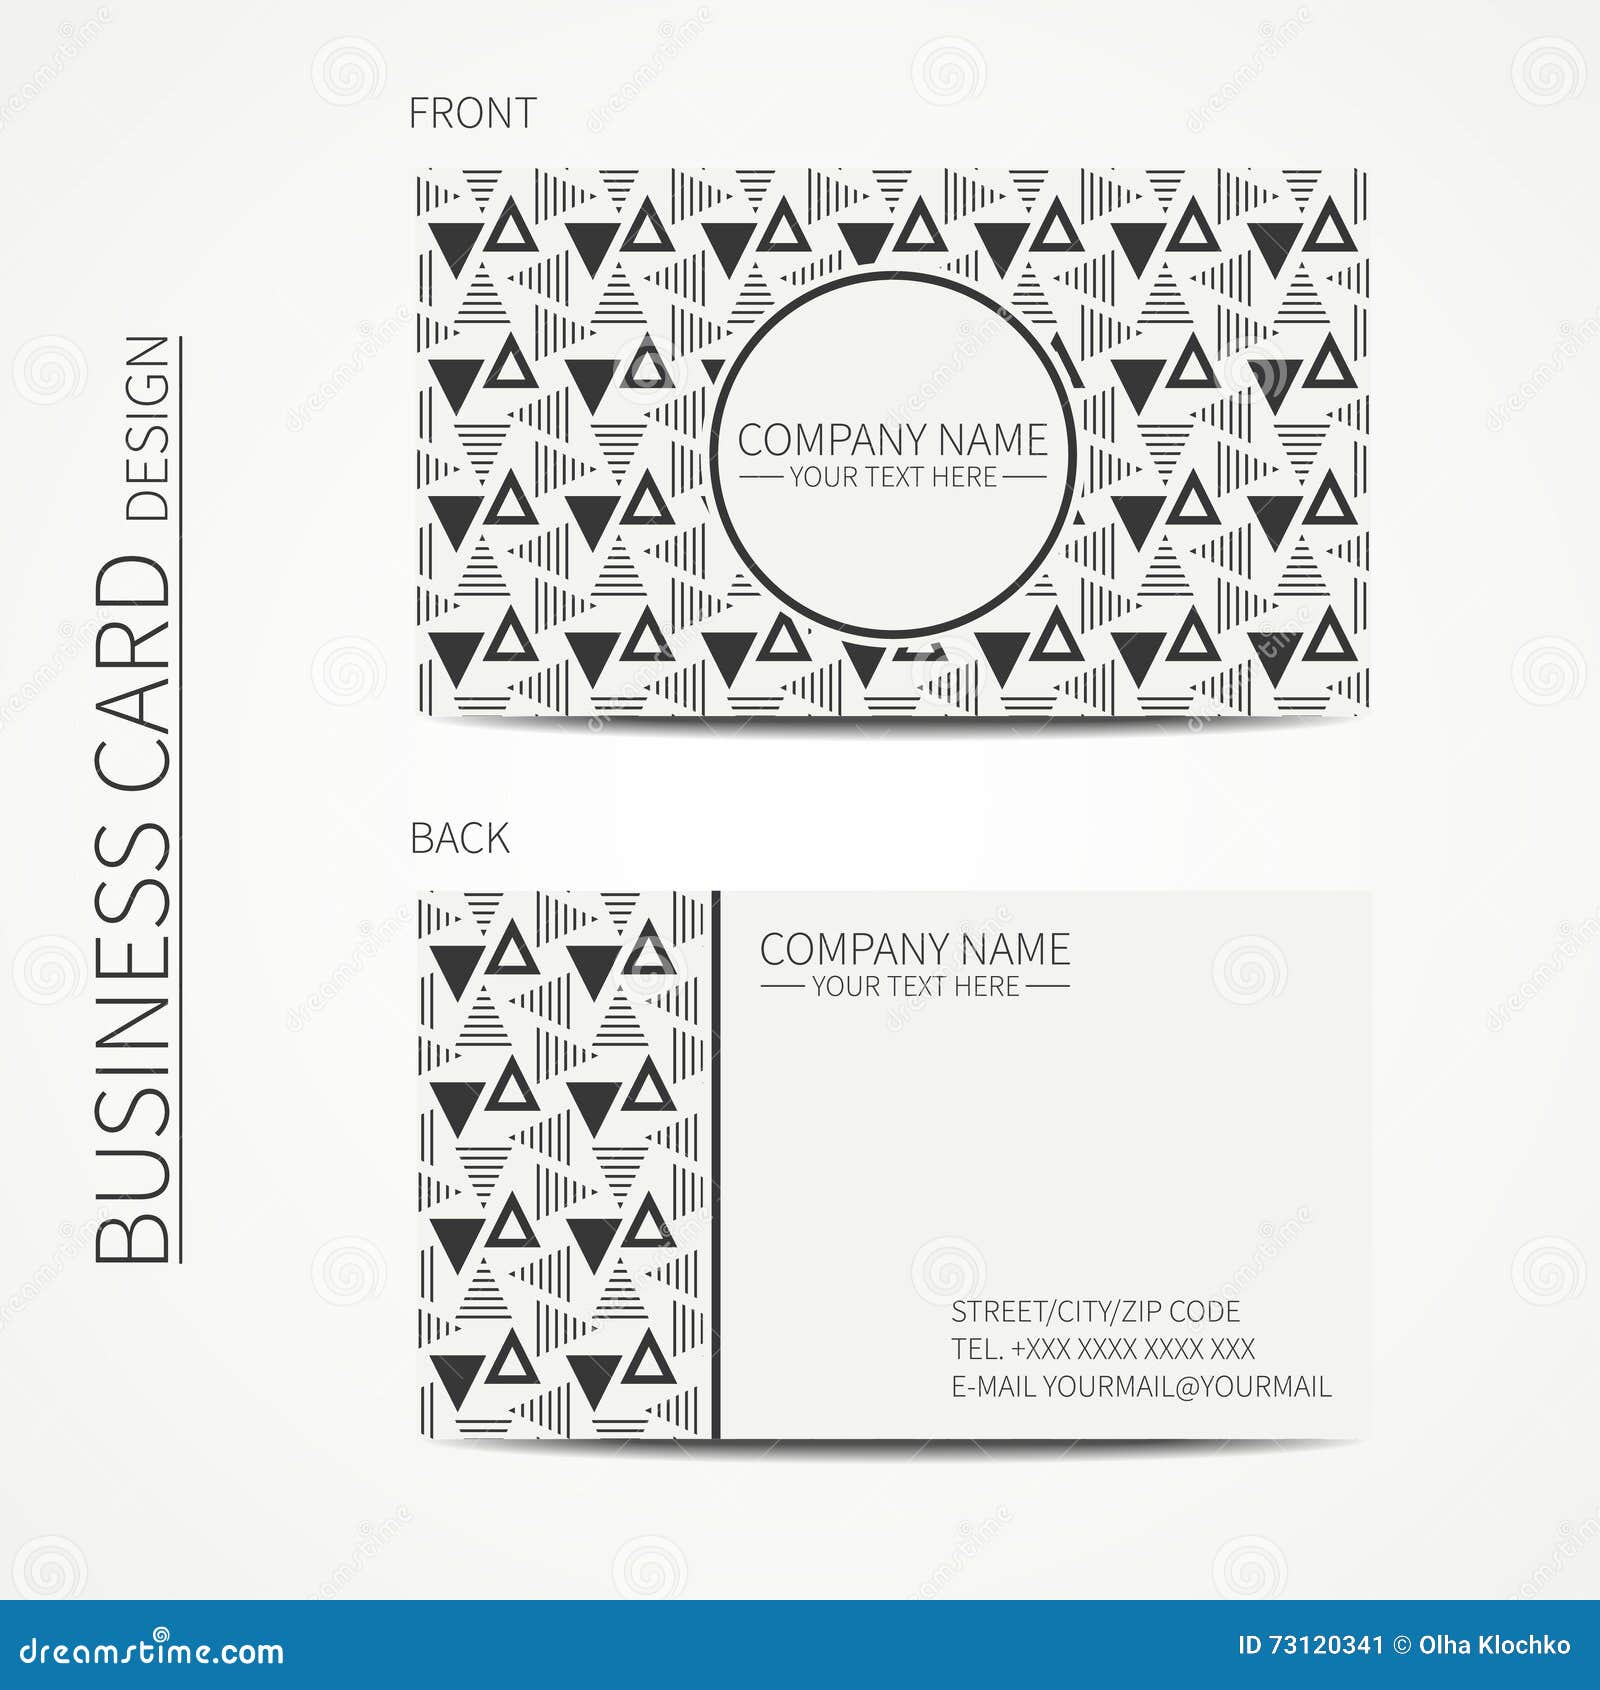 Illustration Business Card Design Black White Stock Vector